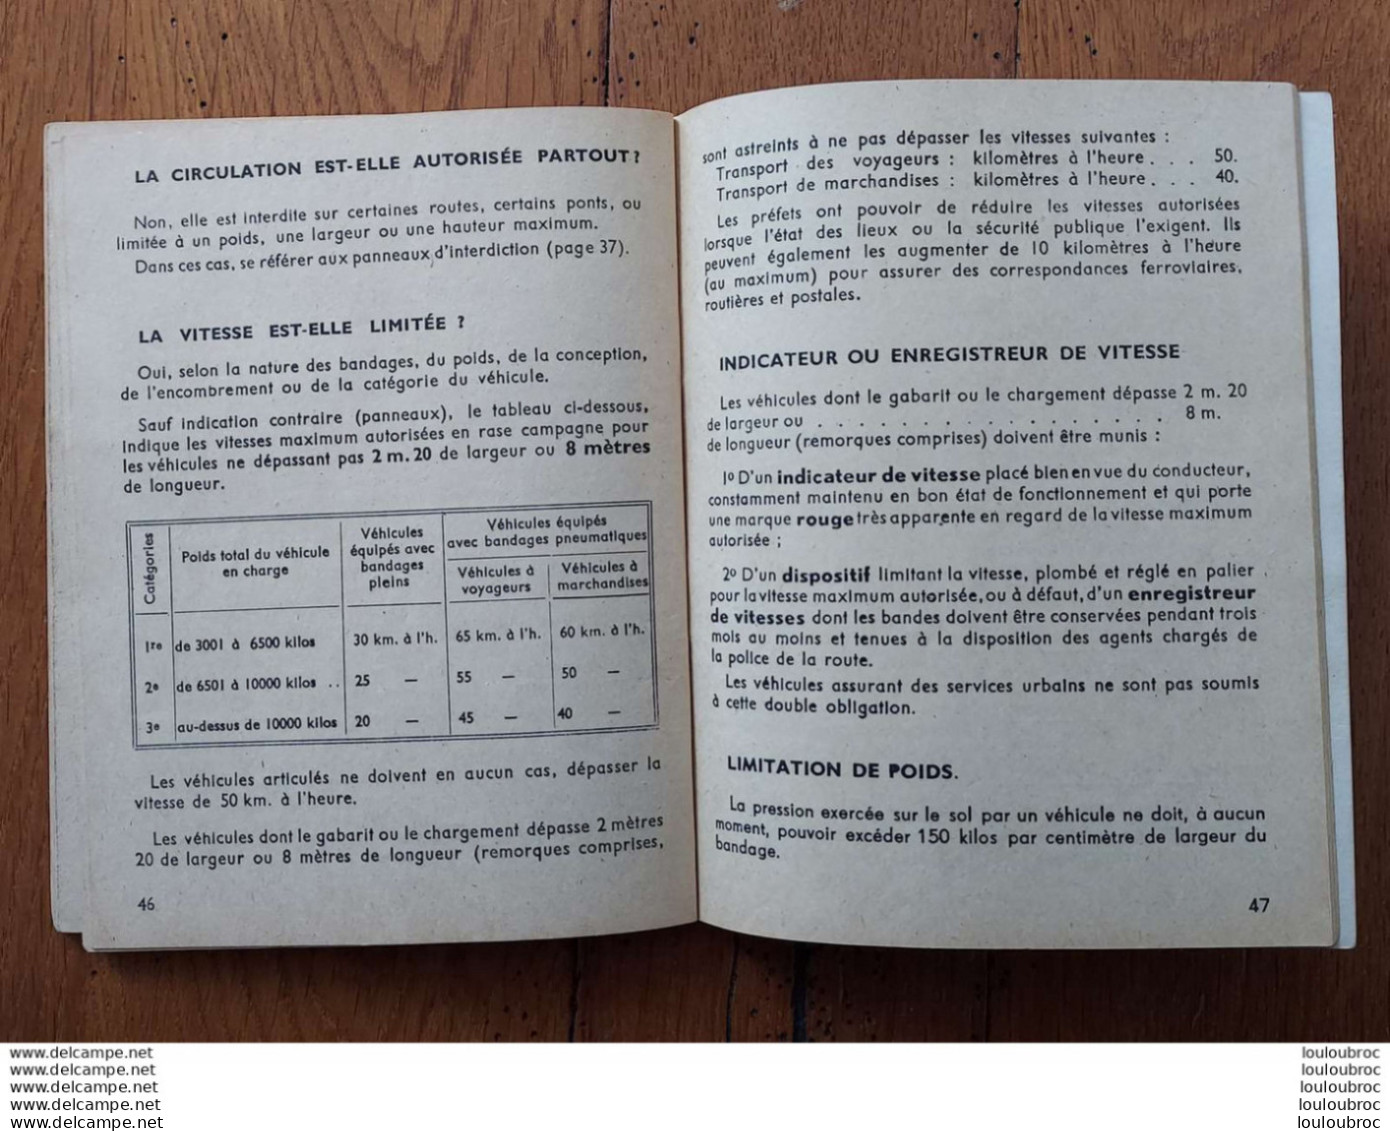 CODE ILLUSTRE LA ROUTE PAR RENE M. VIETTE 1949 RENNES AUTO ECOLE - Voitures